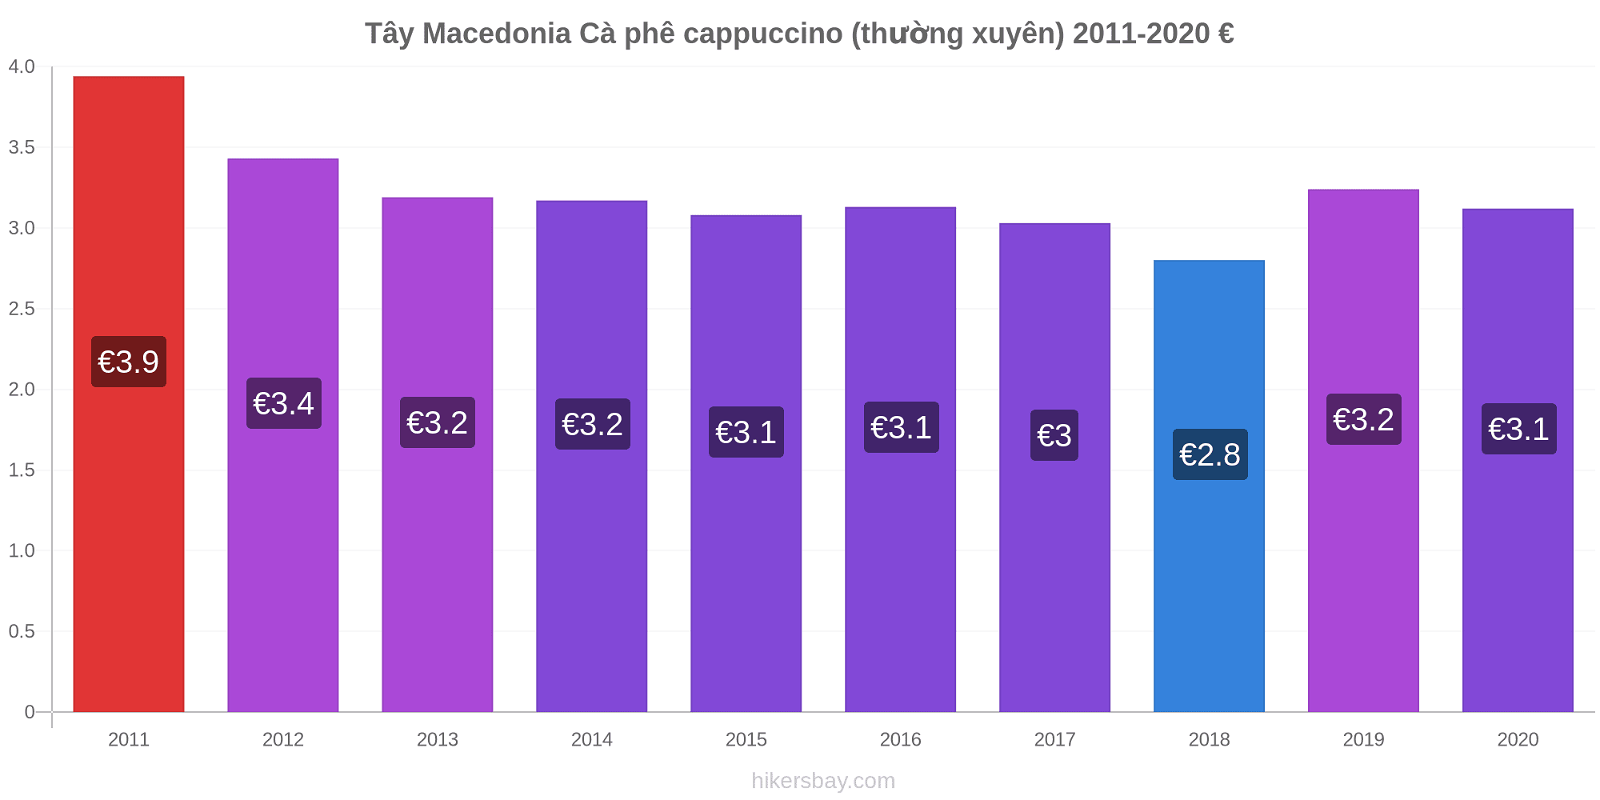 Tây Macedonia thay đổi giá Cà phê cappuccino (thường xuyên) hikersbay.com